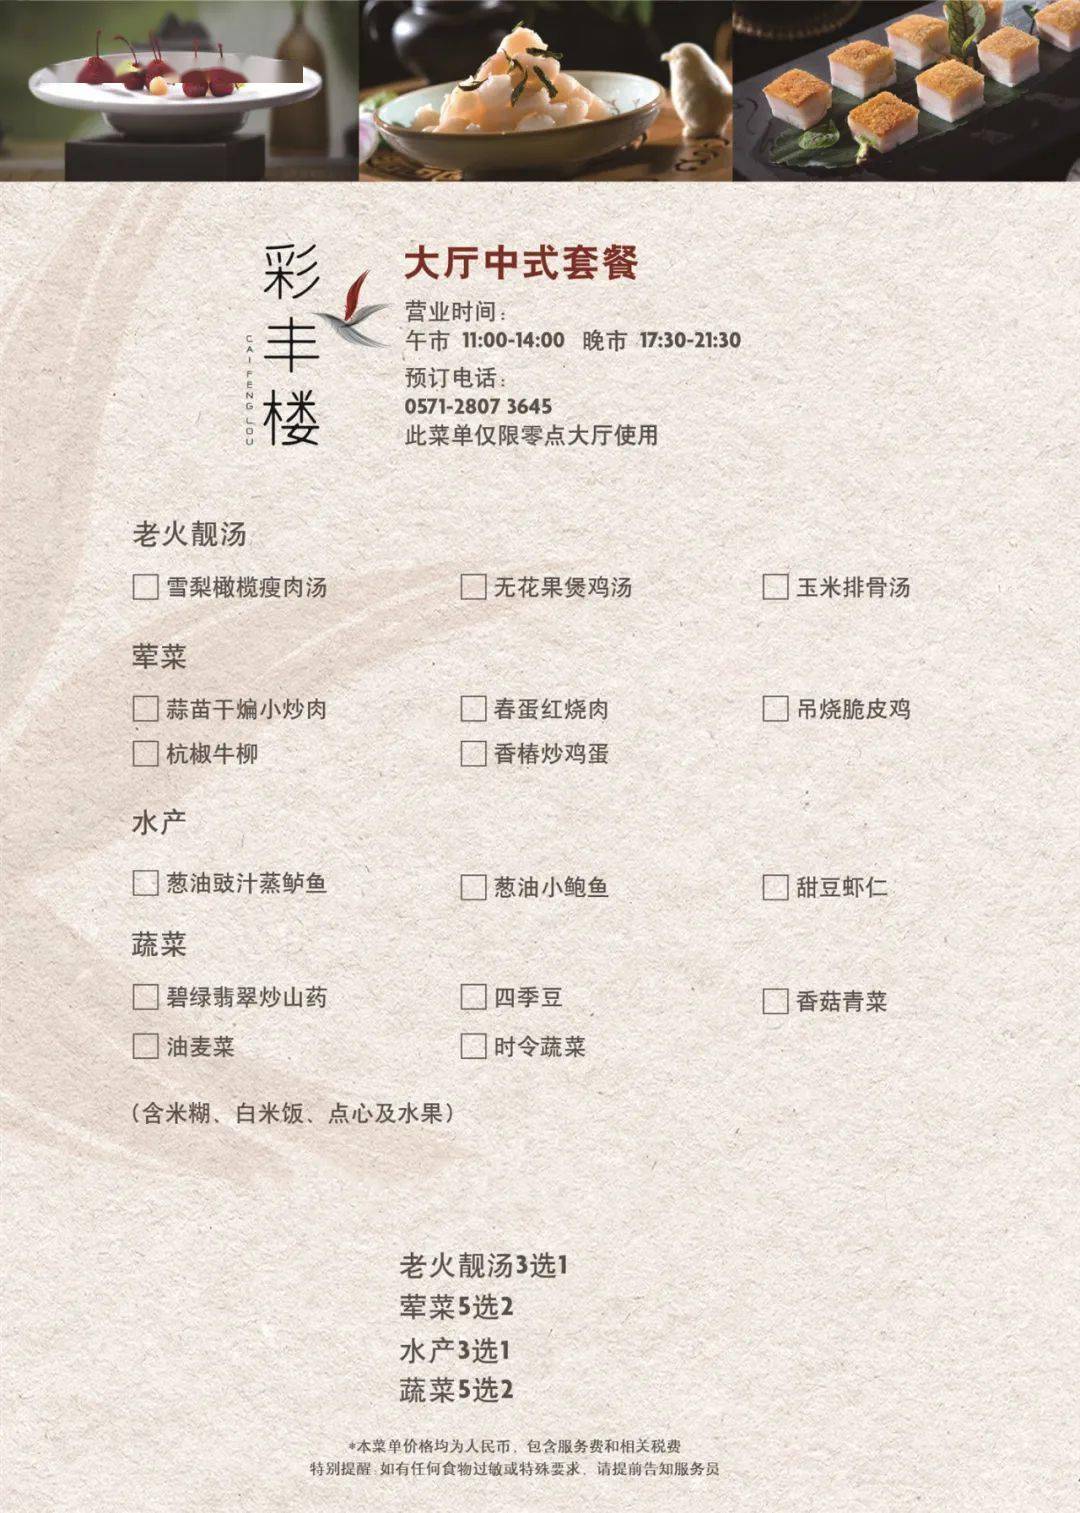 中式套餐菜单